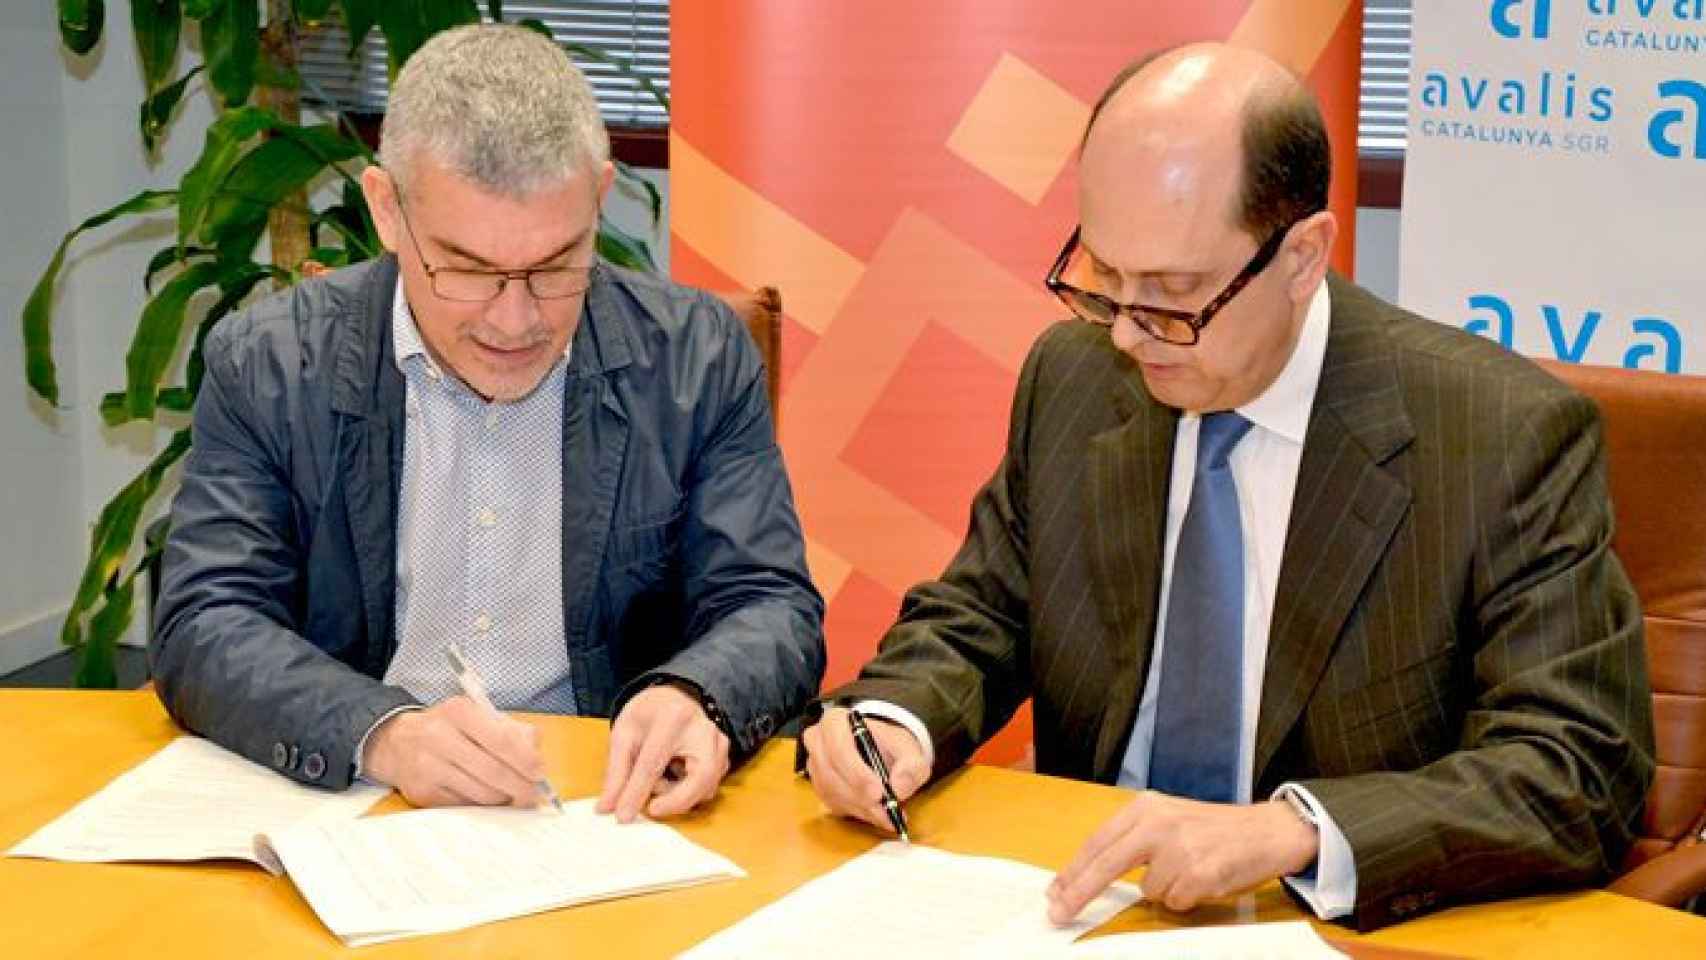 El gerente de Incasòl, Albert Civit (i), firma el contrato con el consejero delegado de Avalis Cataluña, Josep Lores (d) / AVALIS